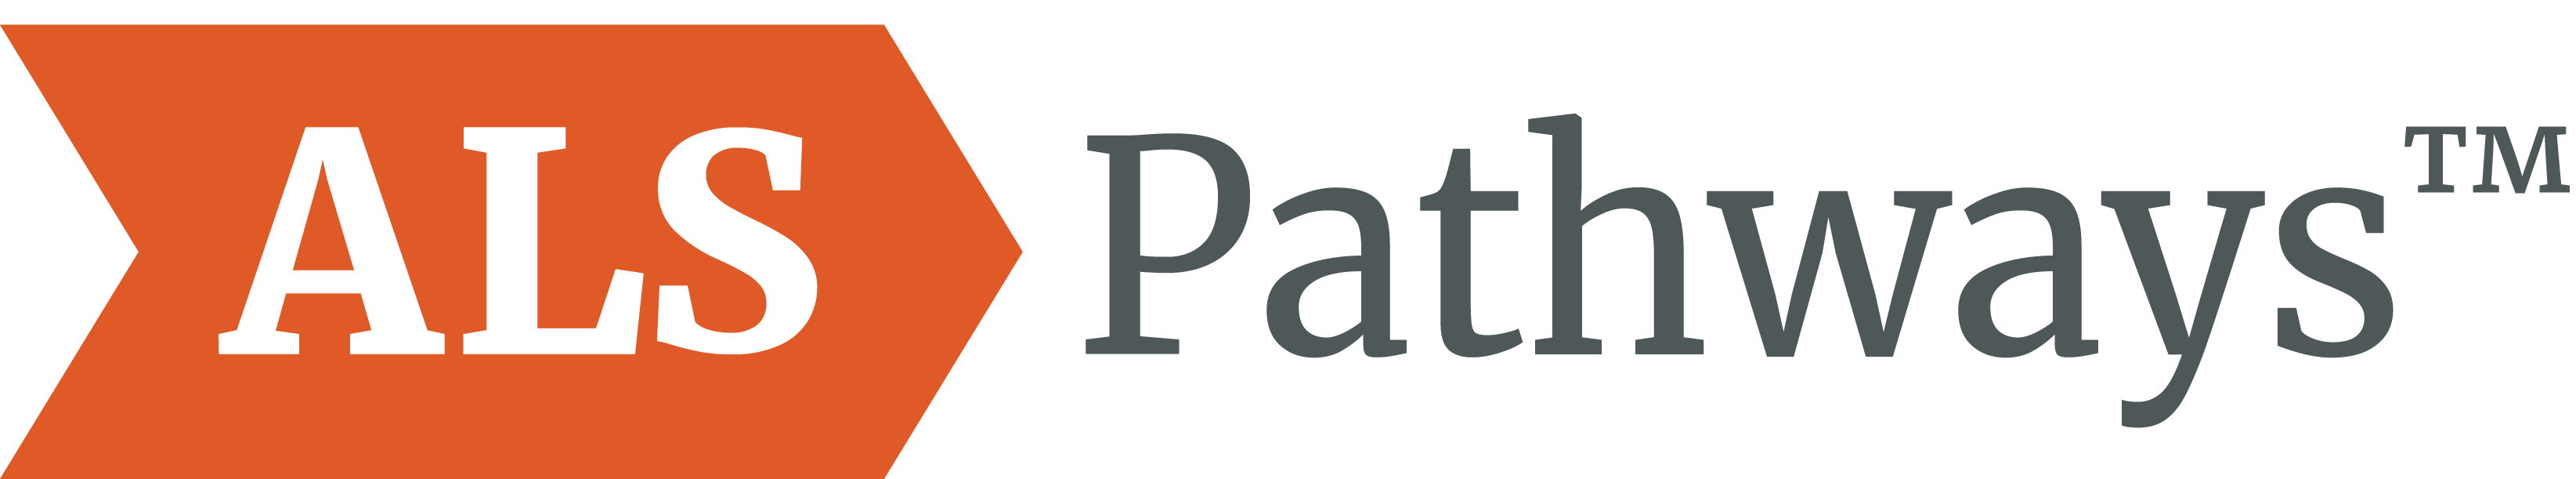 ALS Pathways logo